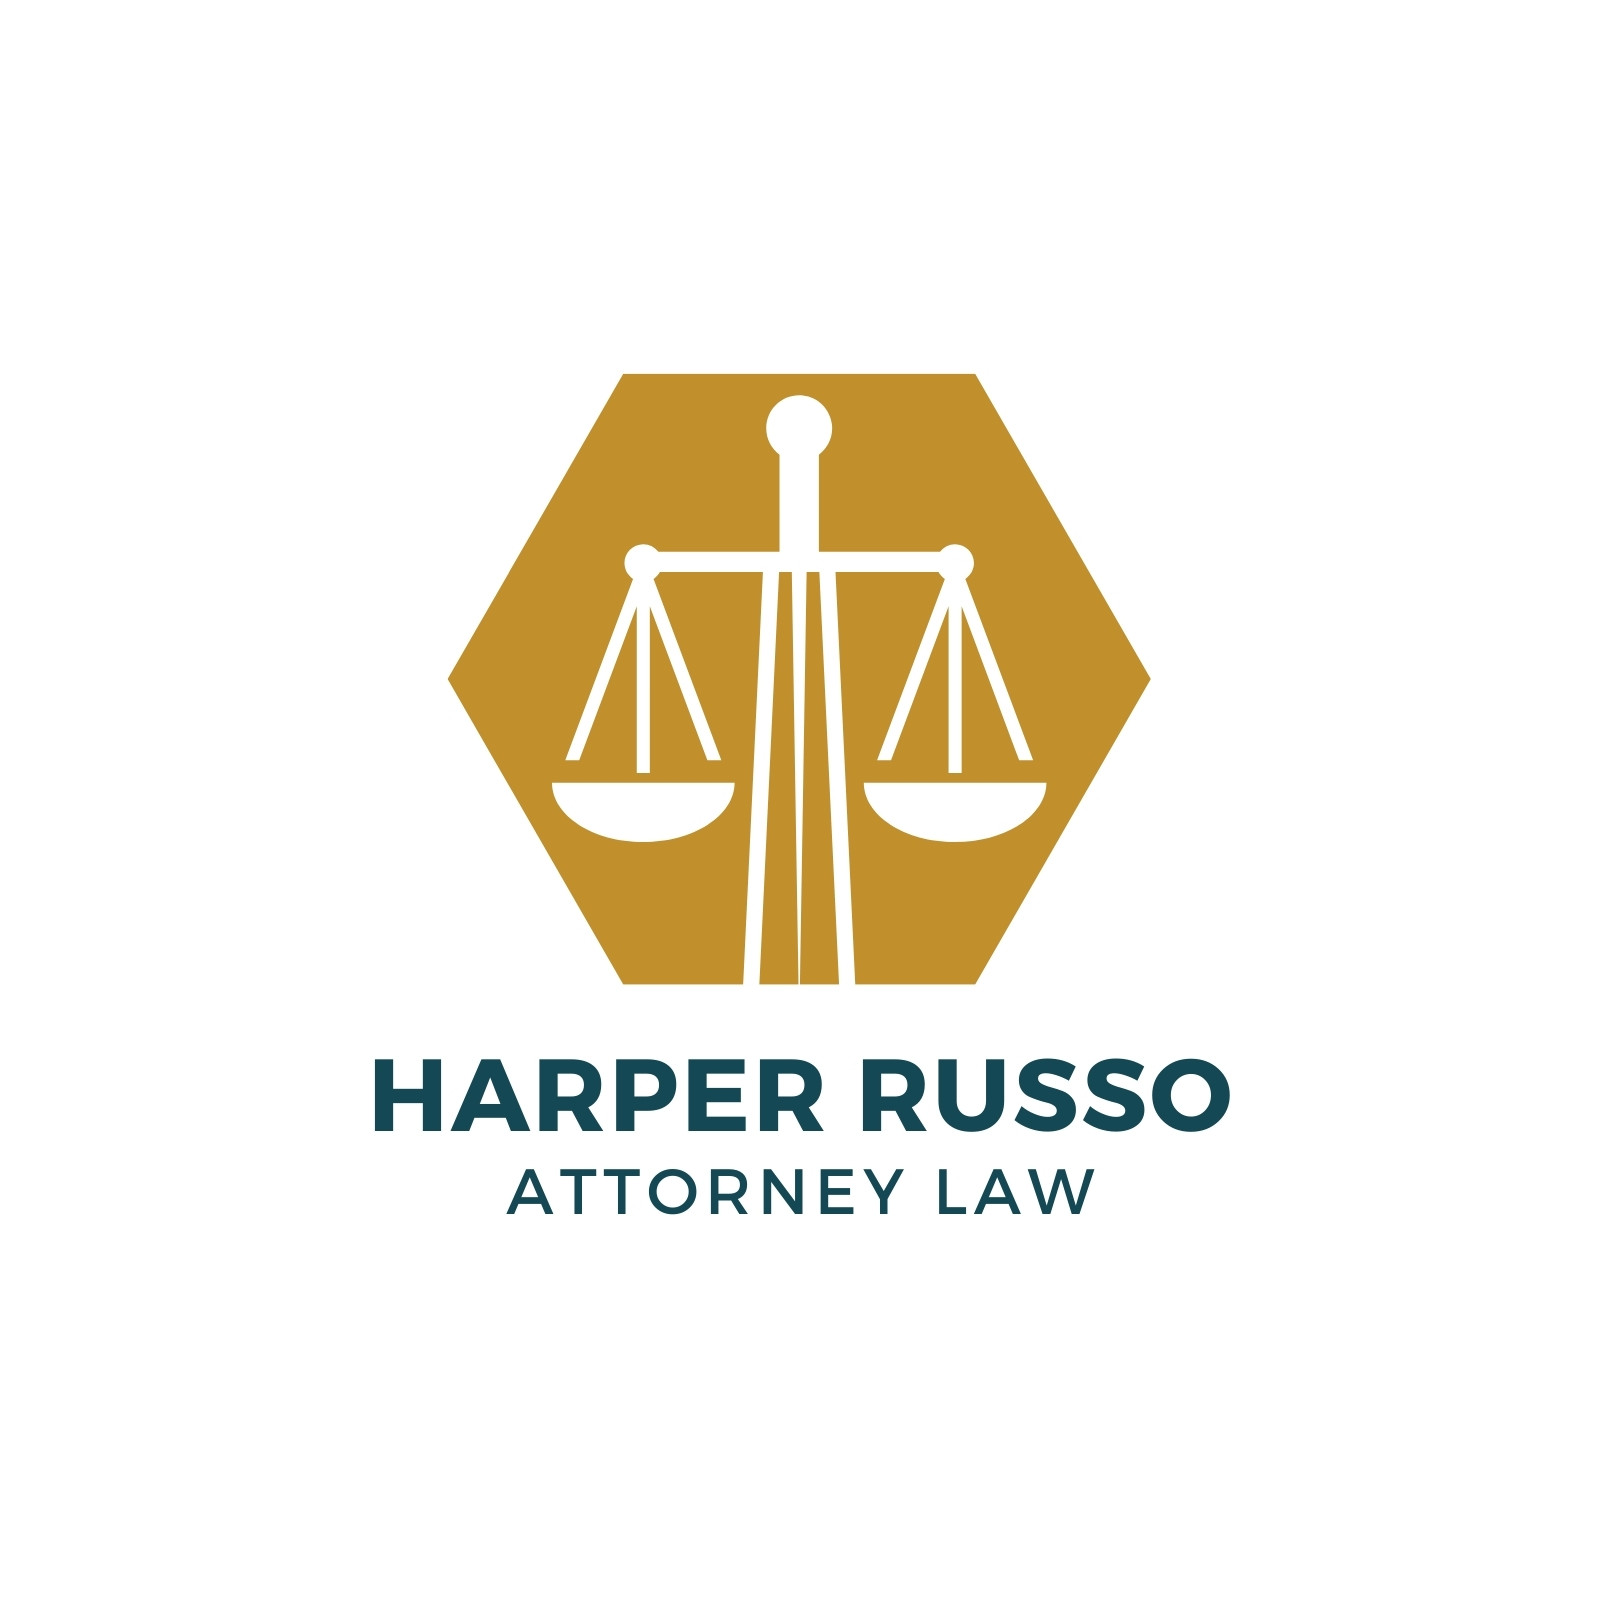 lawyer scale logo